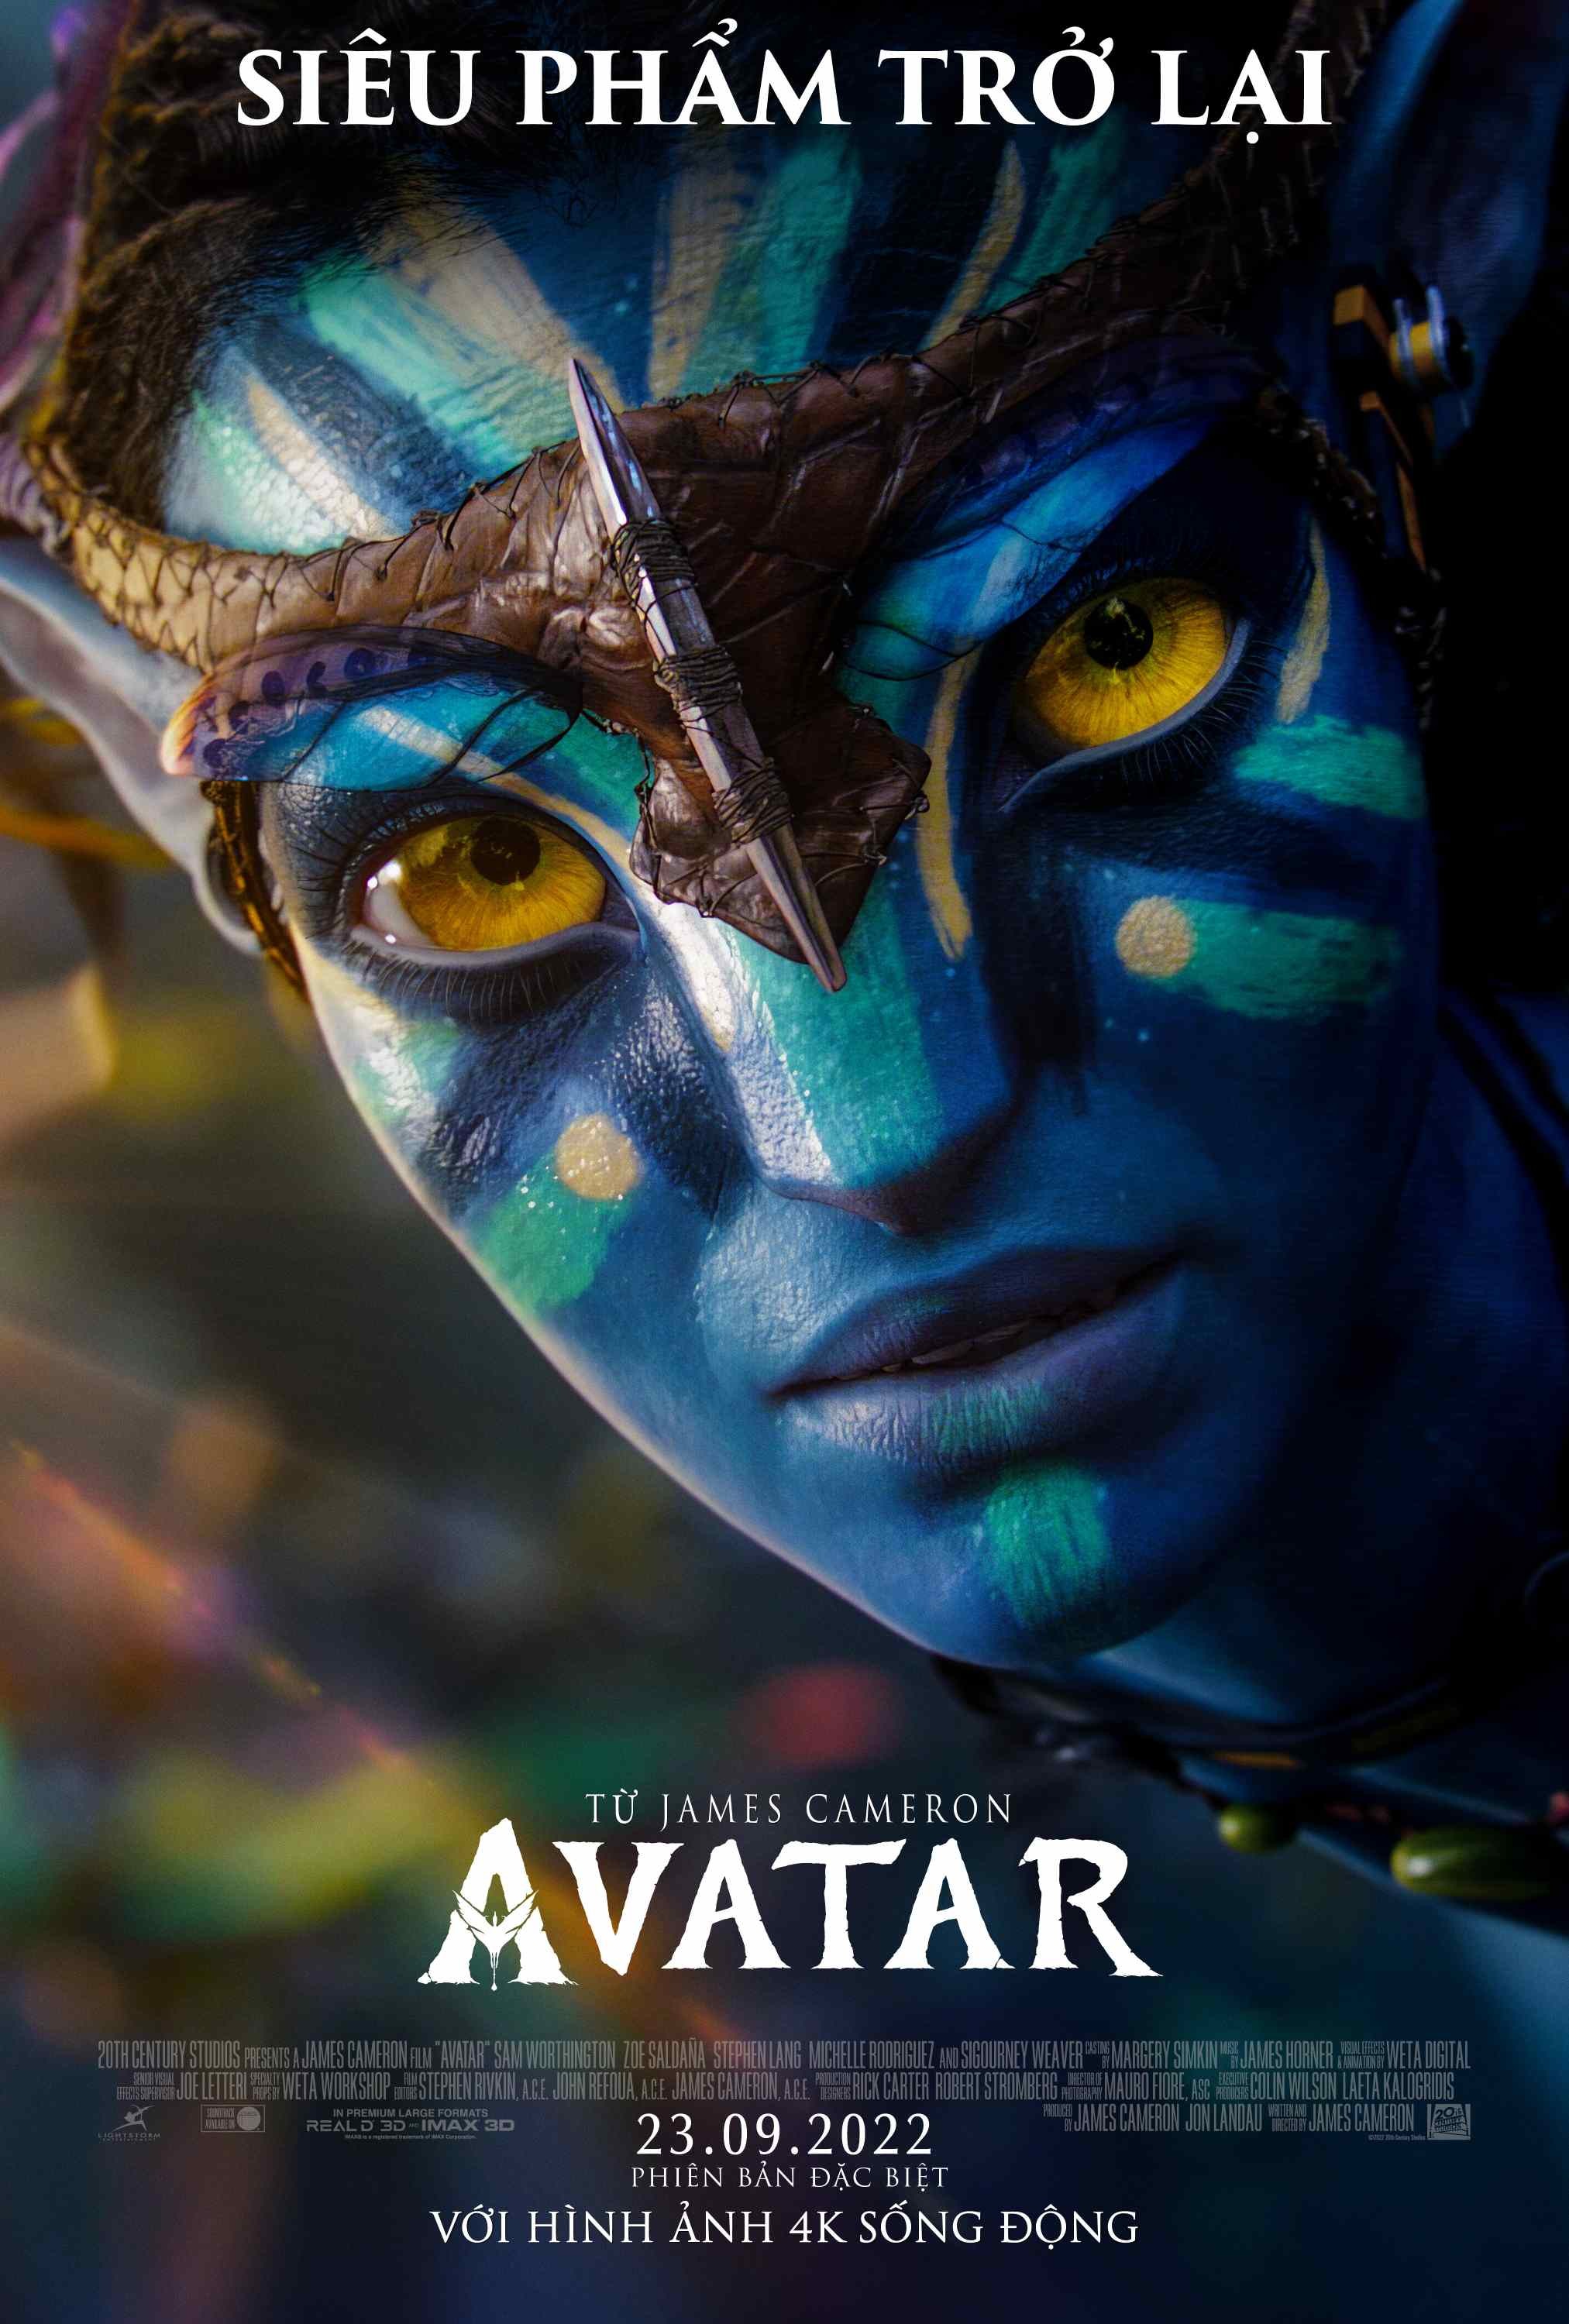 Phim Avatar 2 Bao Giờ Chiếu? - Khám Phá Thế Giới Mới Dưới Lòng Đại Dương